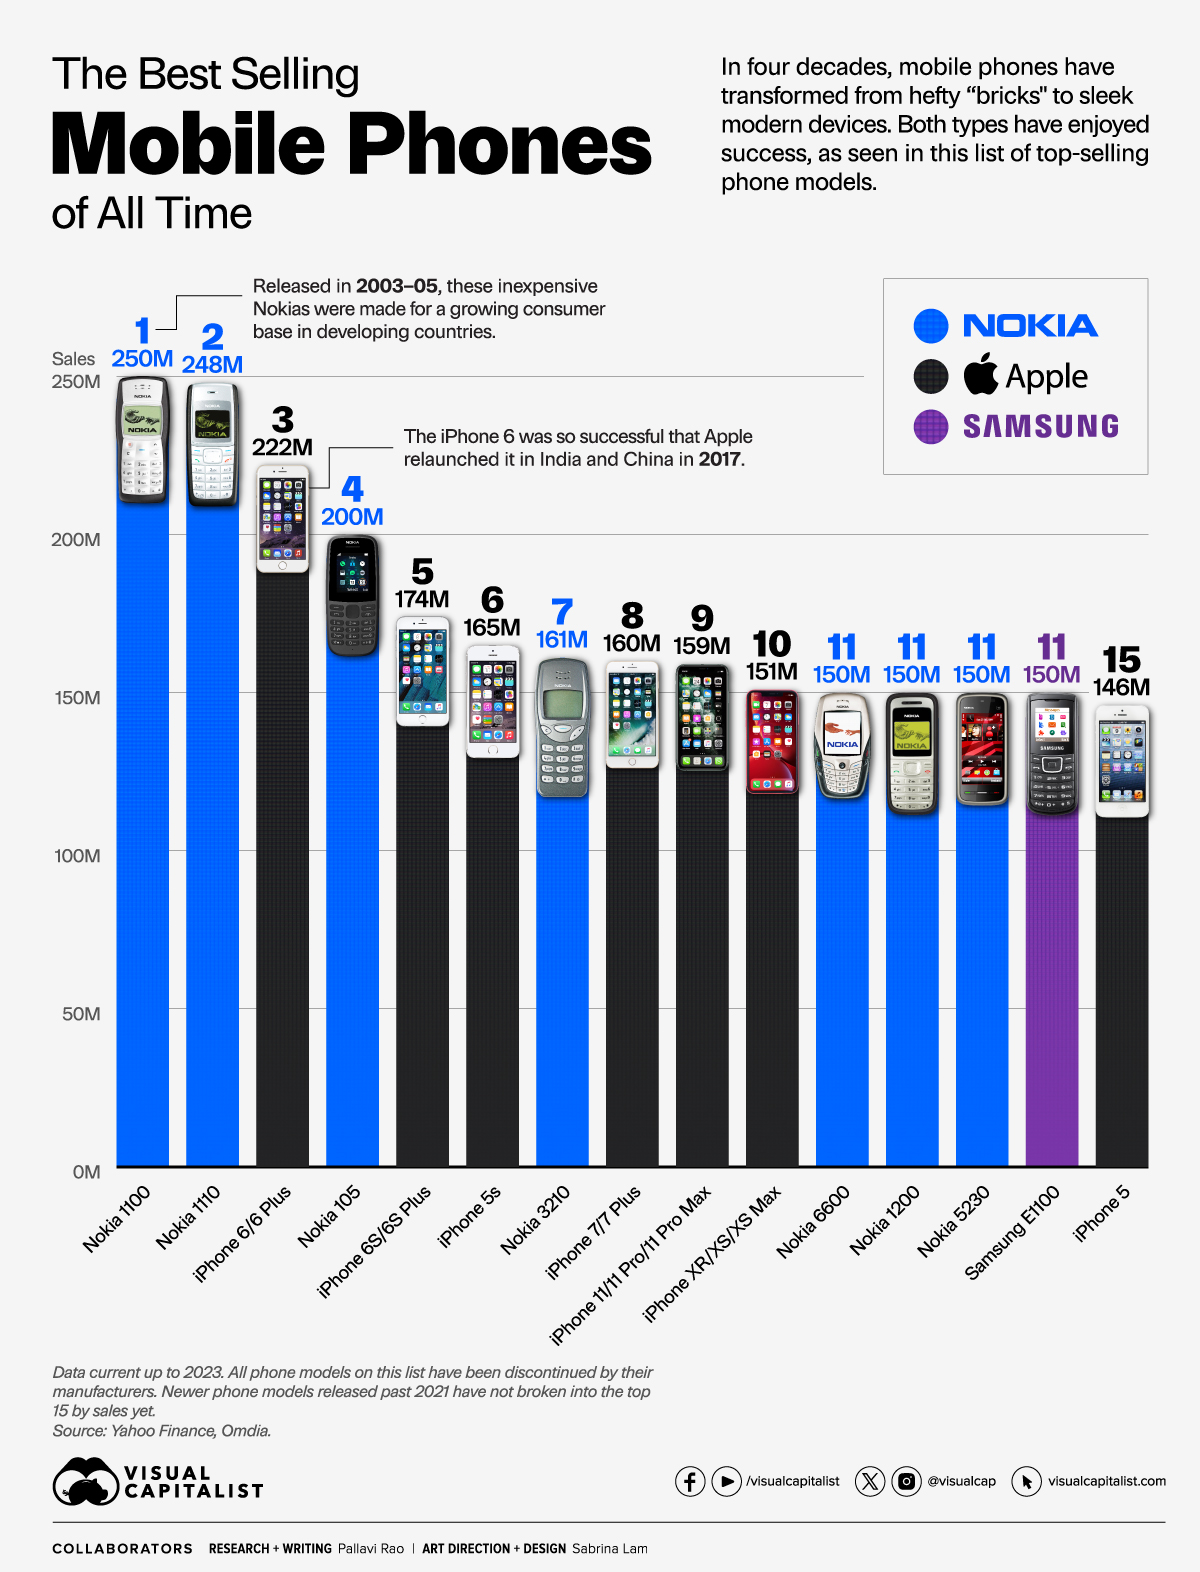 تكنولوجيا  - باع 250 مليون نسخة.. موبايل "بزراير" يتفوق على عمالقة الهواتف بأكبر مبيعات فى التاريخ